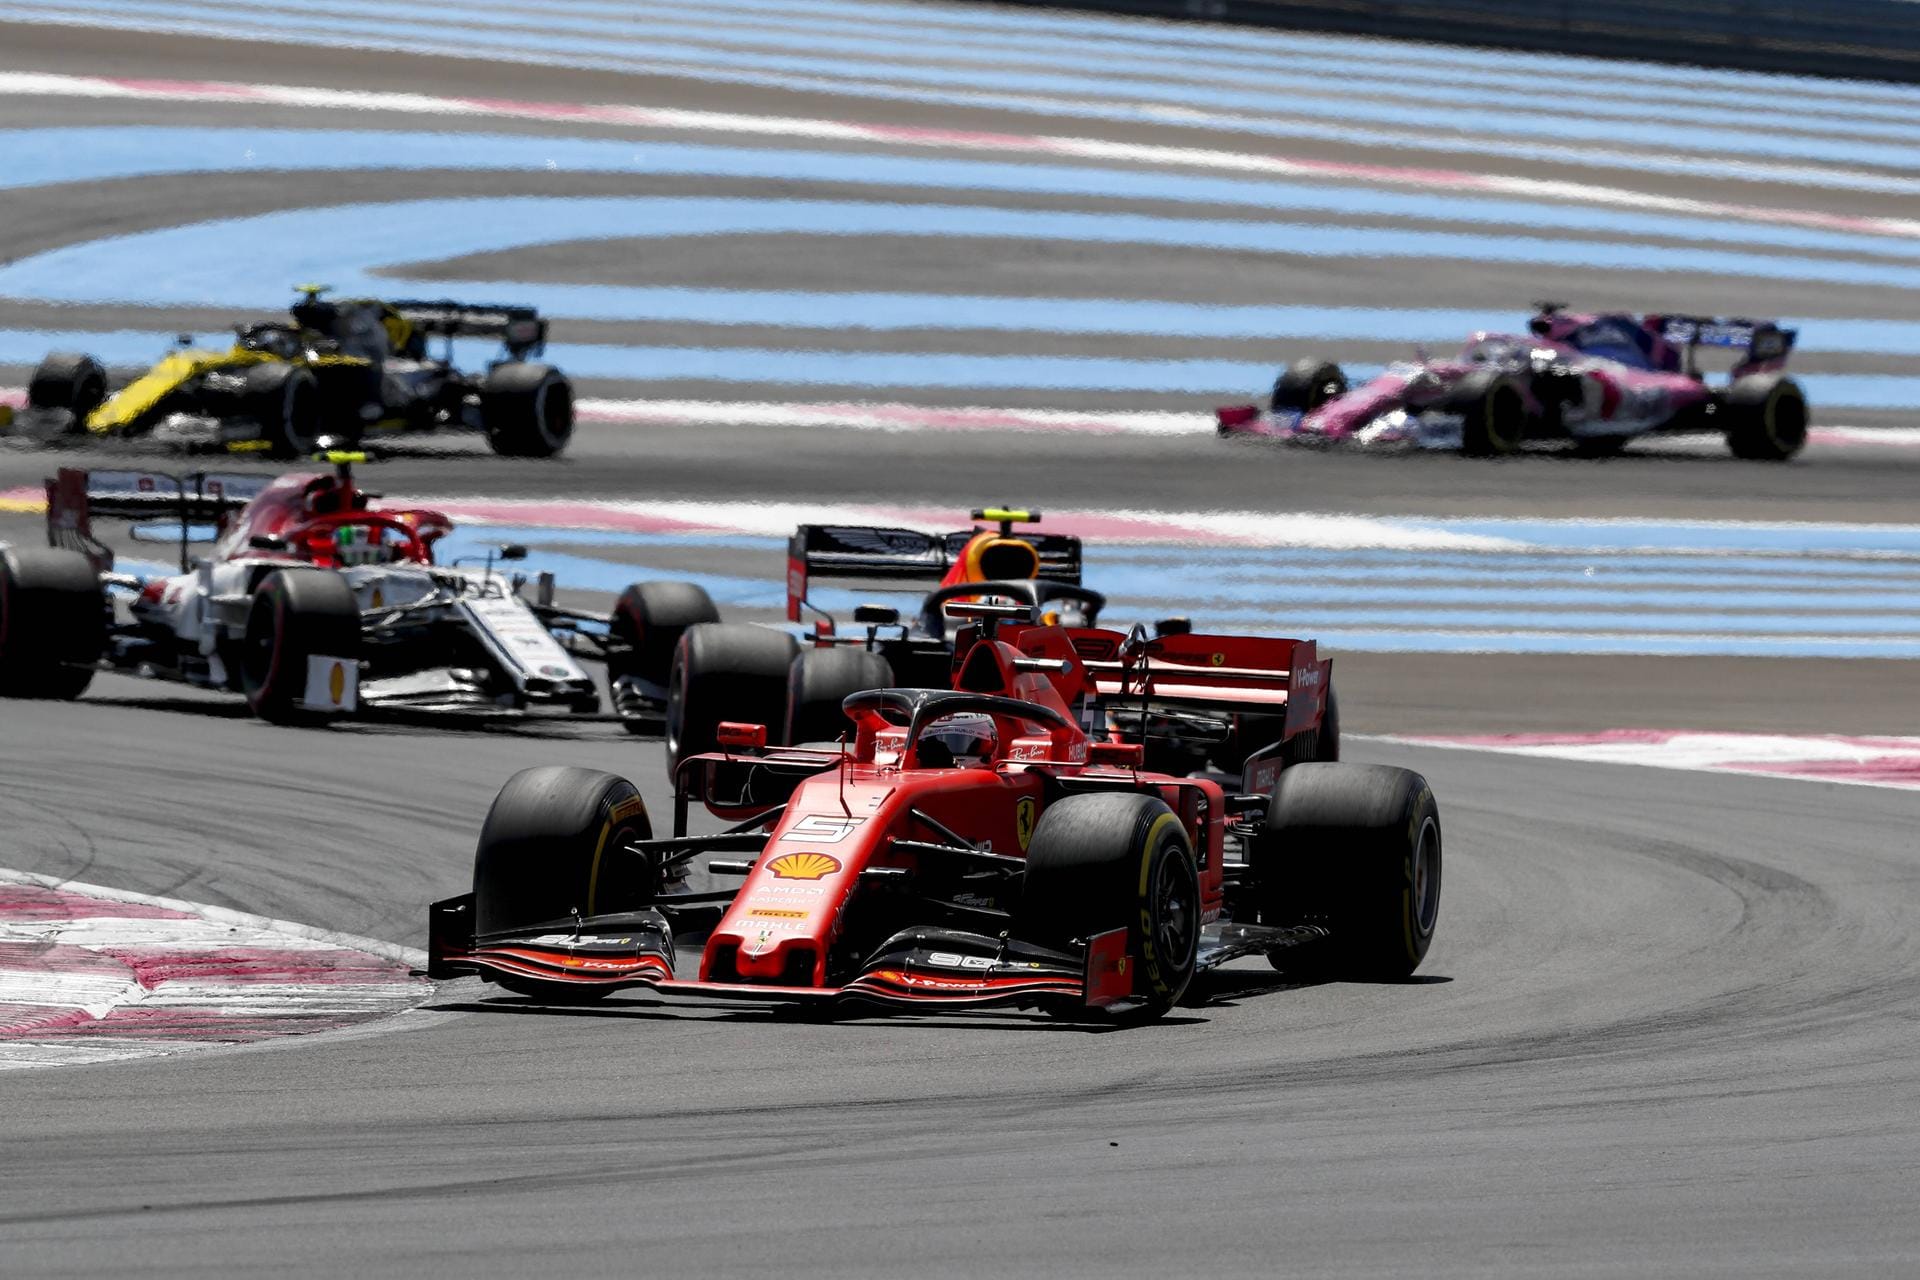 Großer Preis von Frankreich: Beim Langeweile-Rennen von Le Castellet belegt Vettel Platz fünf, kann sich immerhin von Startplatz sieben vorkämpfen. Aber: Mit einem schlechten Qualifying bringt sich Vettel selbst um einen Podiumsplatz auf der Strecke mit kaum Überholmöglichkeiten.